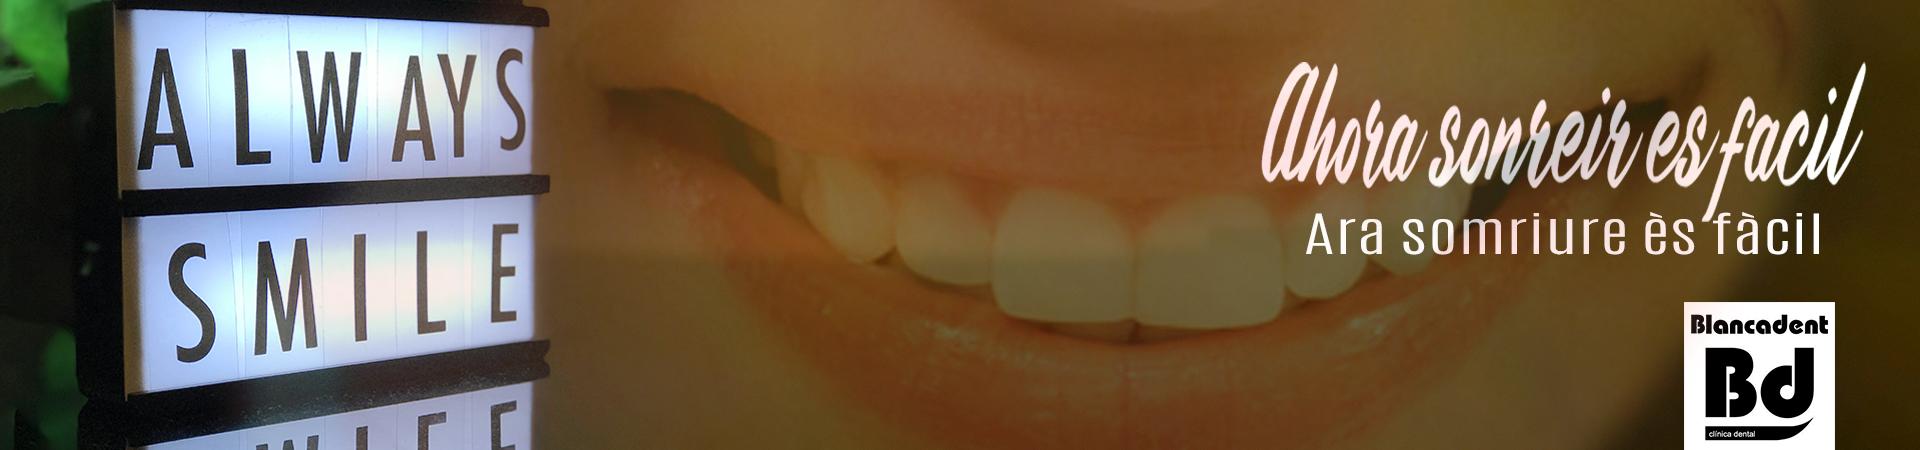 Blancadent clínica dental